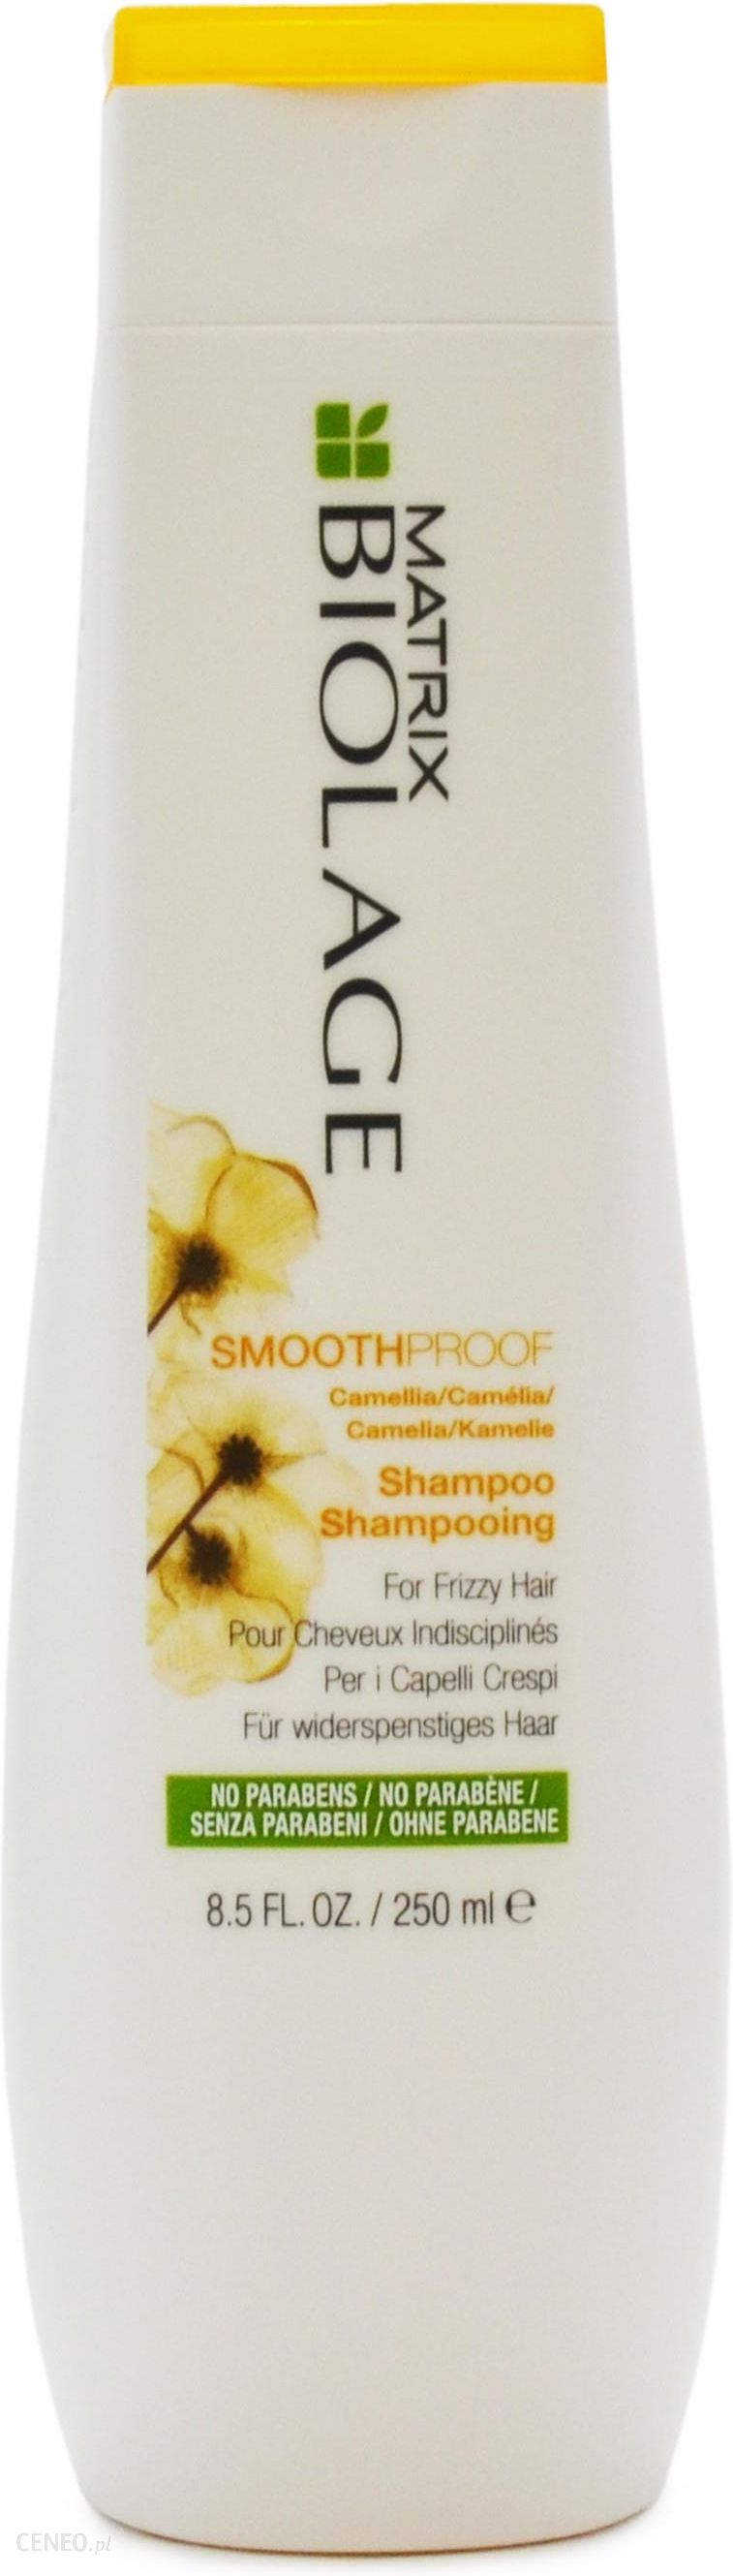 matrix biolage smoothproof szampon wygładzający wizaz